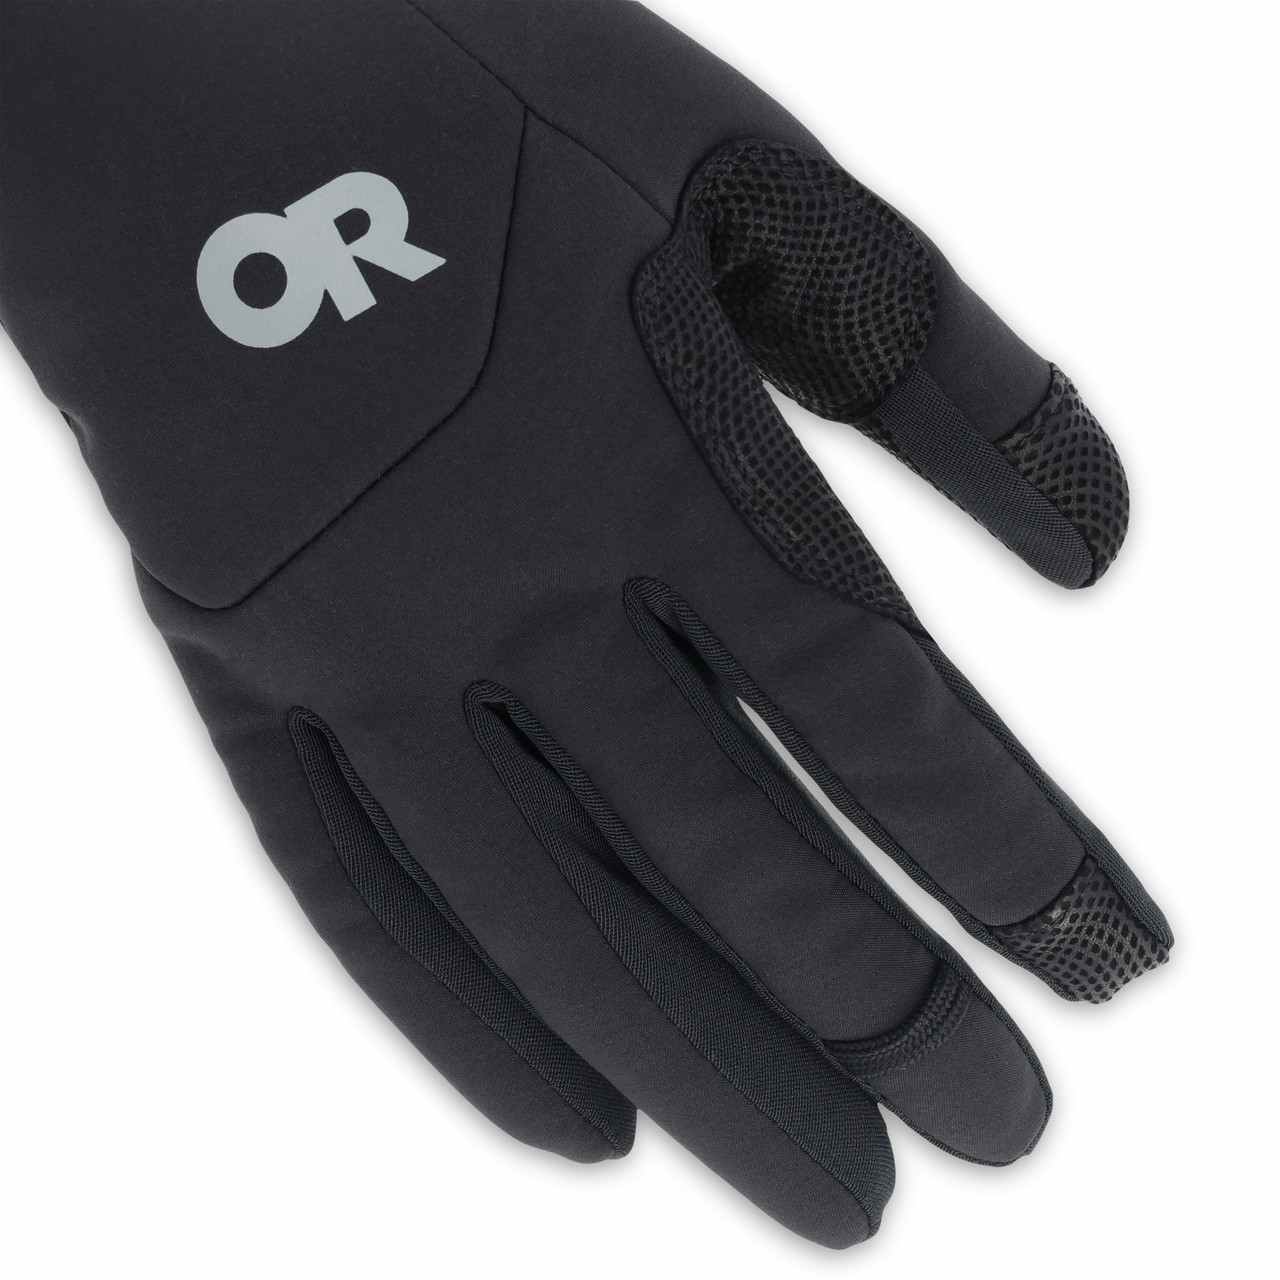 Mixalot Gloves Black